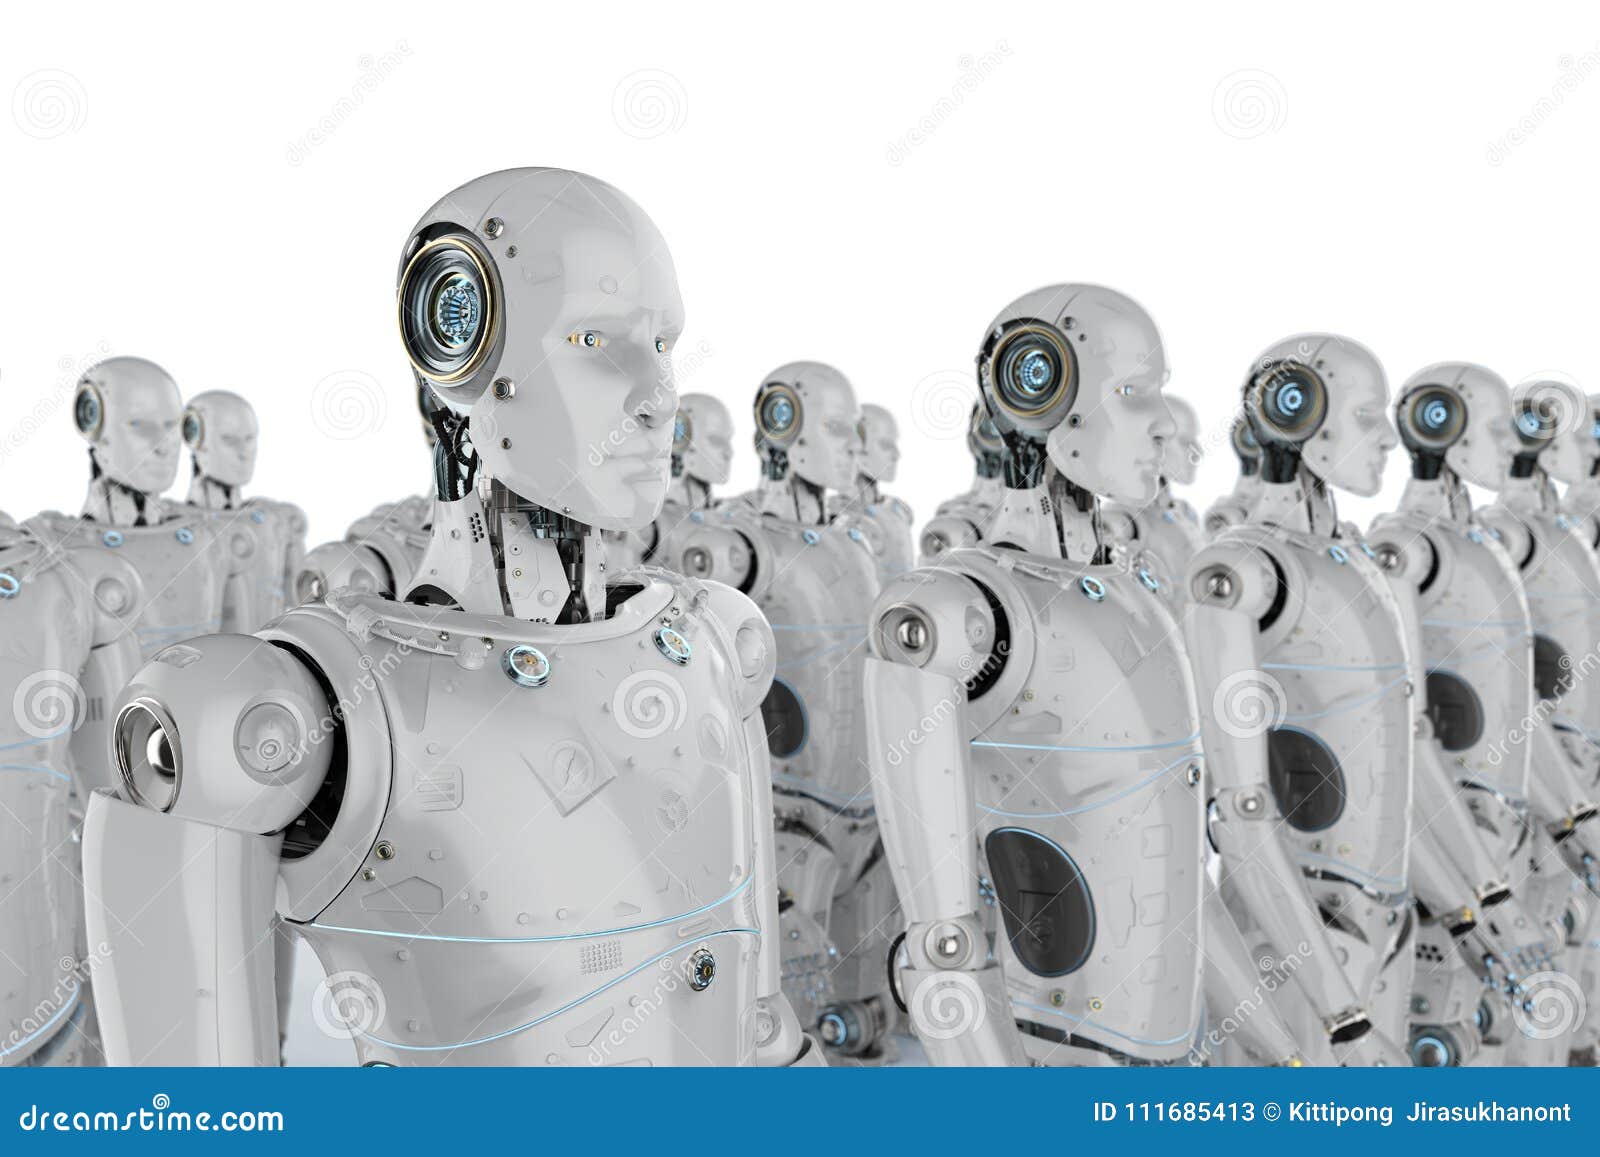 Favor Entrelazamiento Bisagra Grupo de robots stock de ilustración. Ilustración de cibernético - 111685413